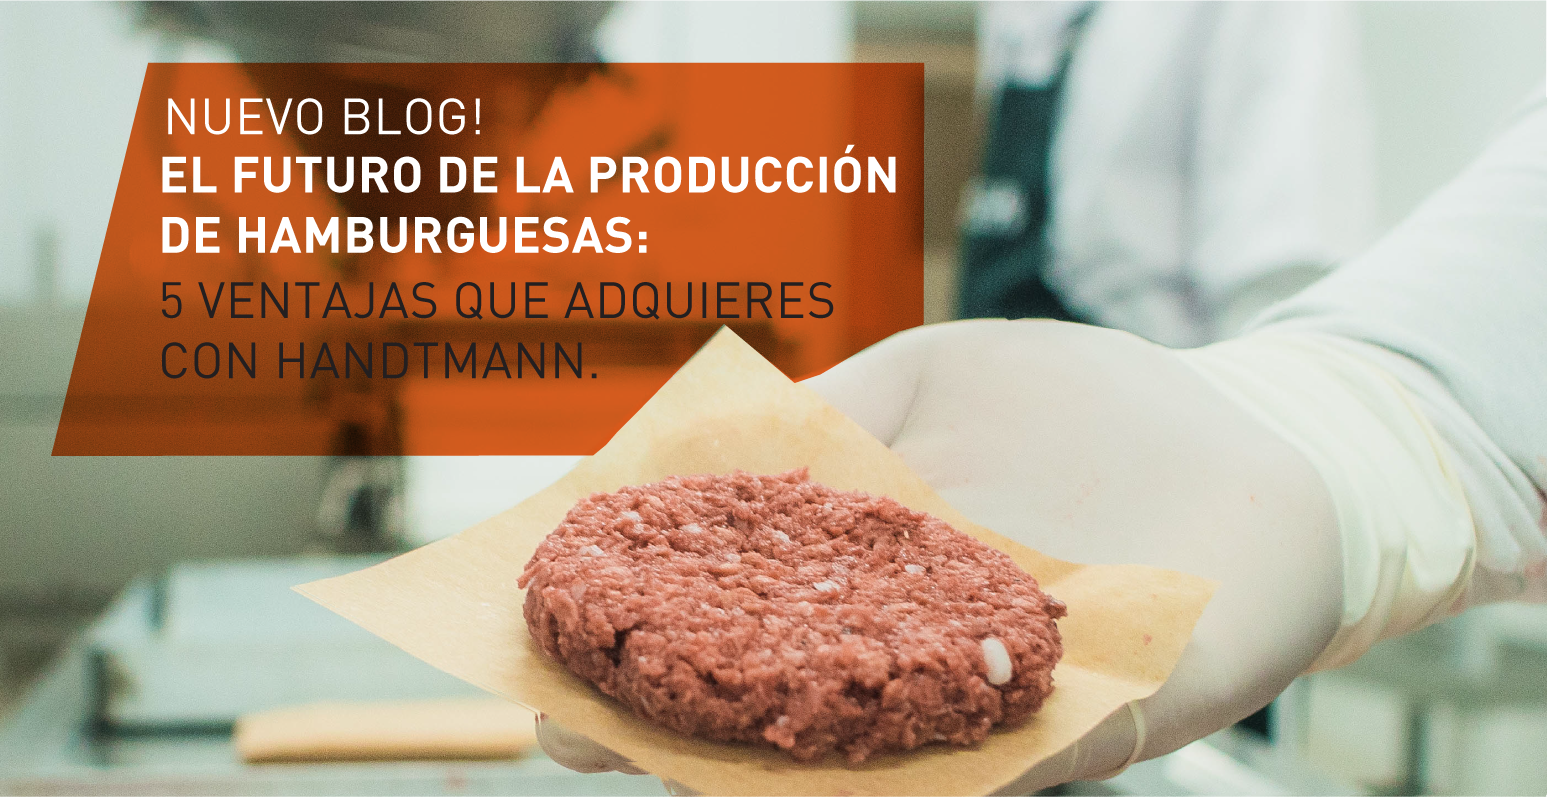 El futuro de la producción de hamburguesas